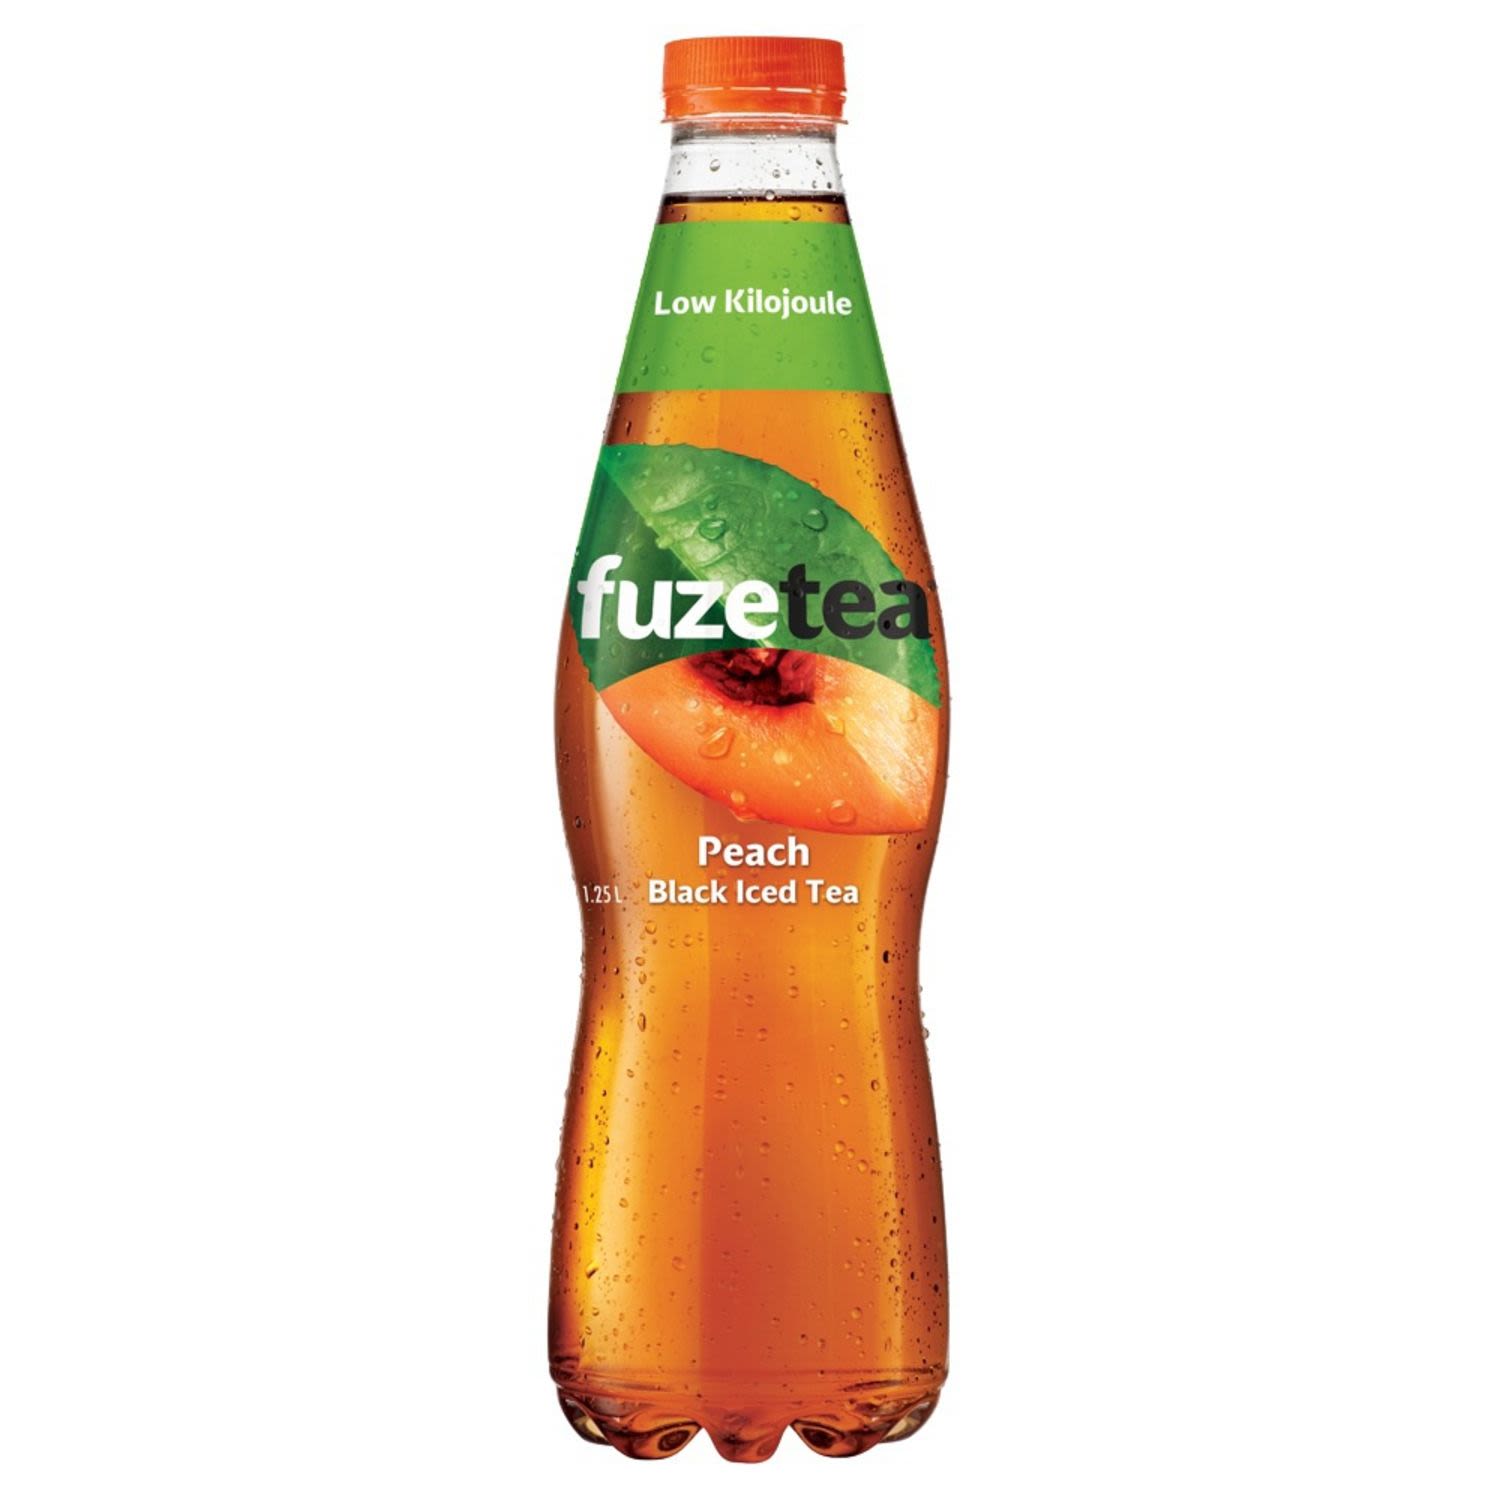 Fuze Ice Tea Peach, 1.25 Litre